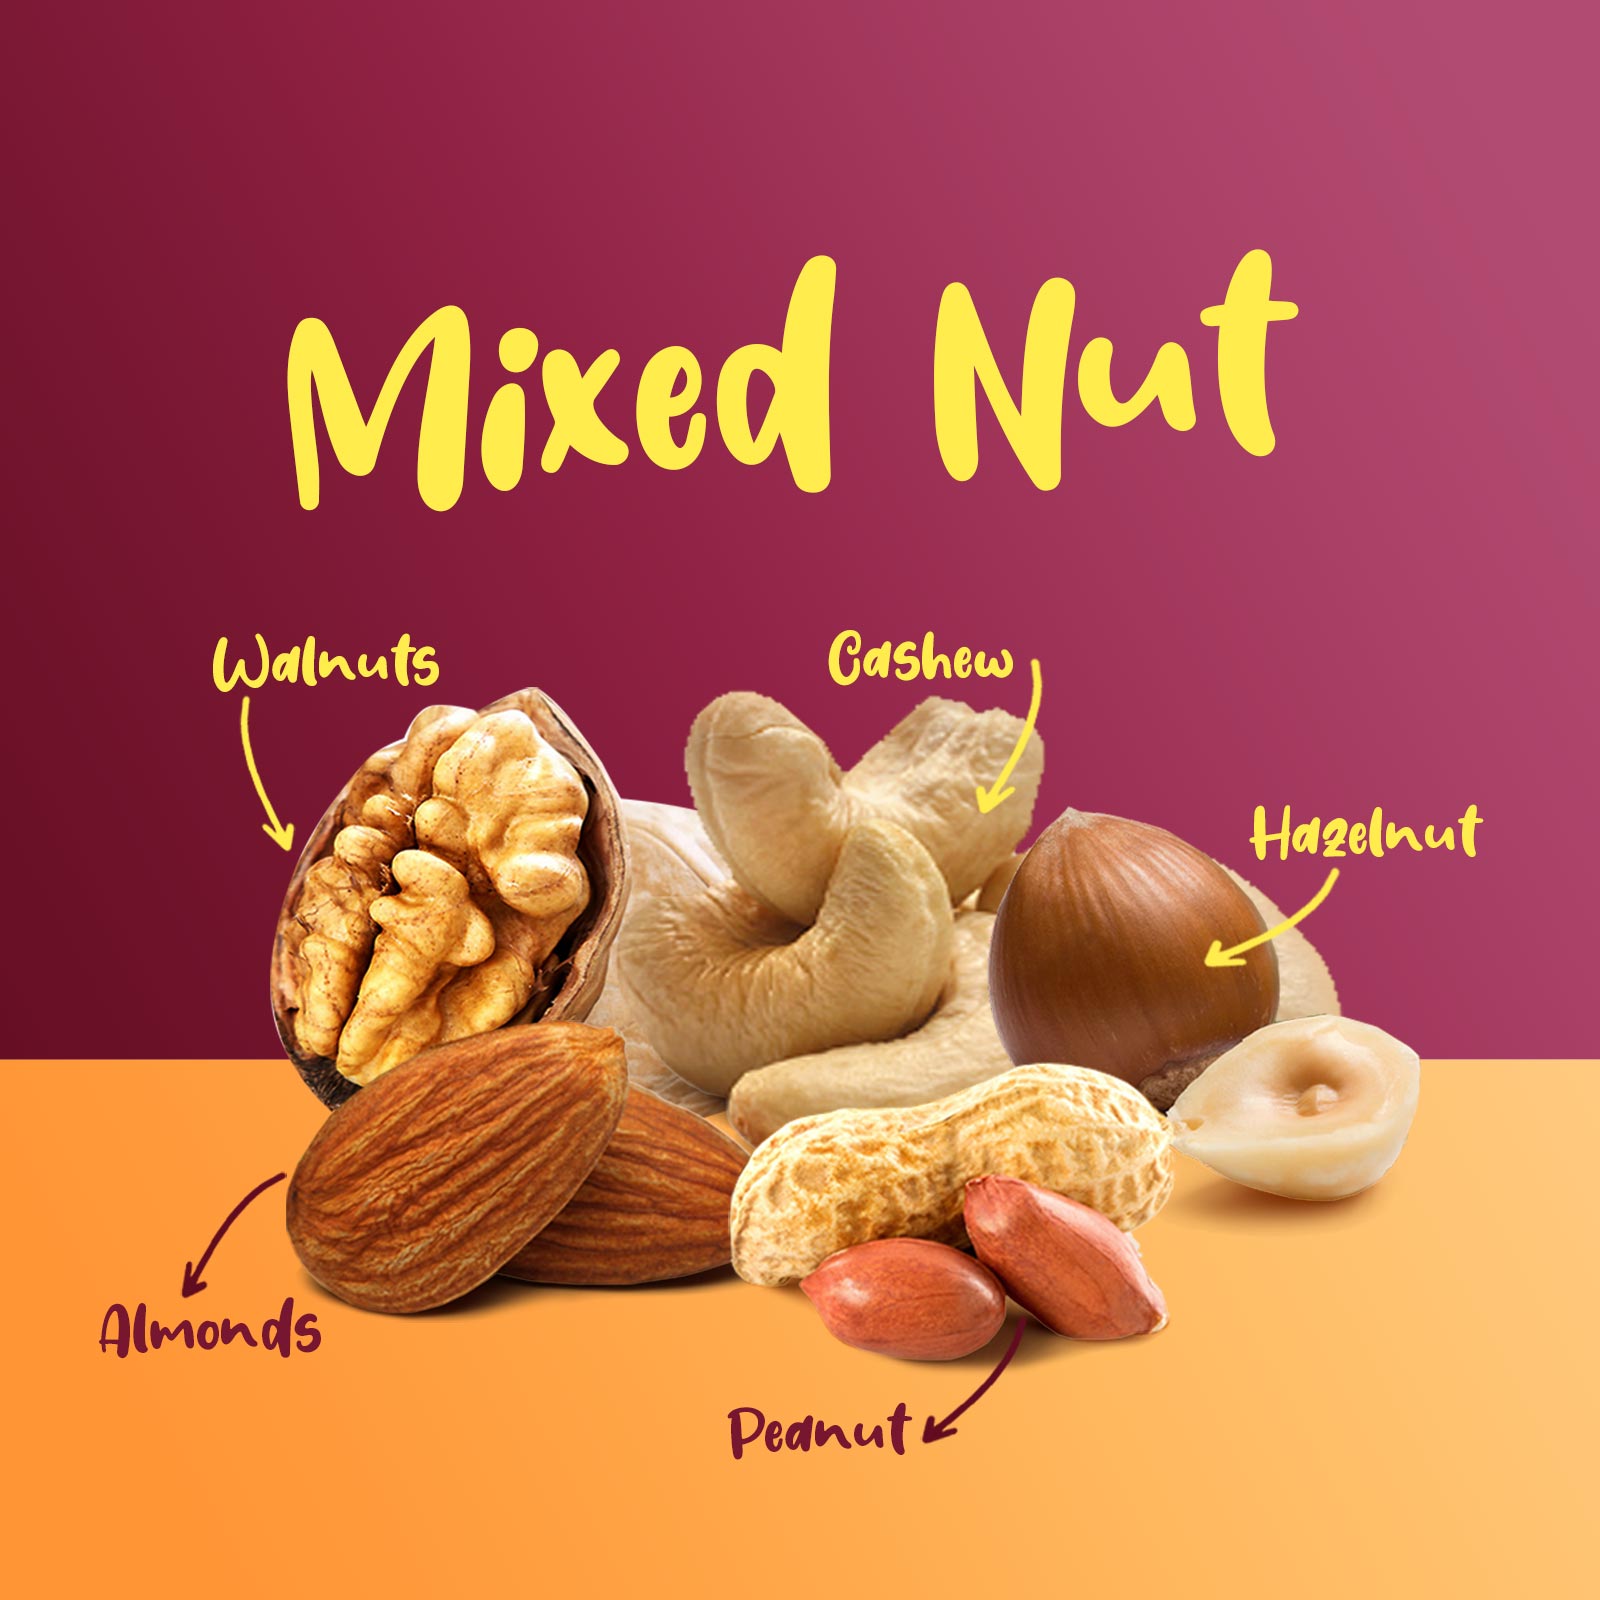 Walnut, Cashew, Almond, Peanut, Hazelnuts(250g)